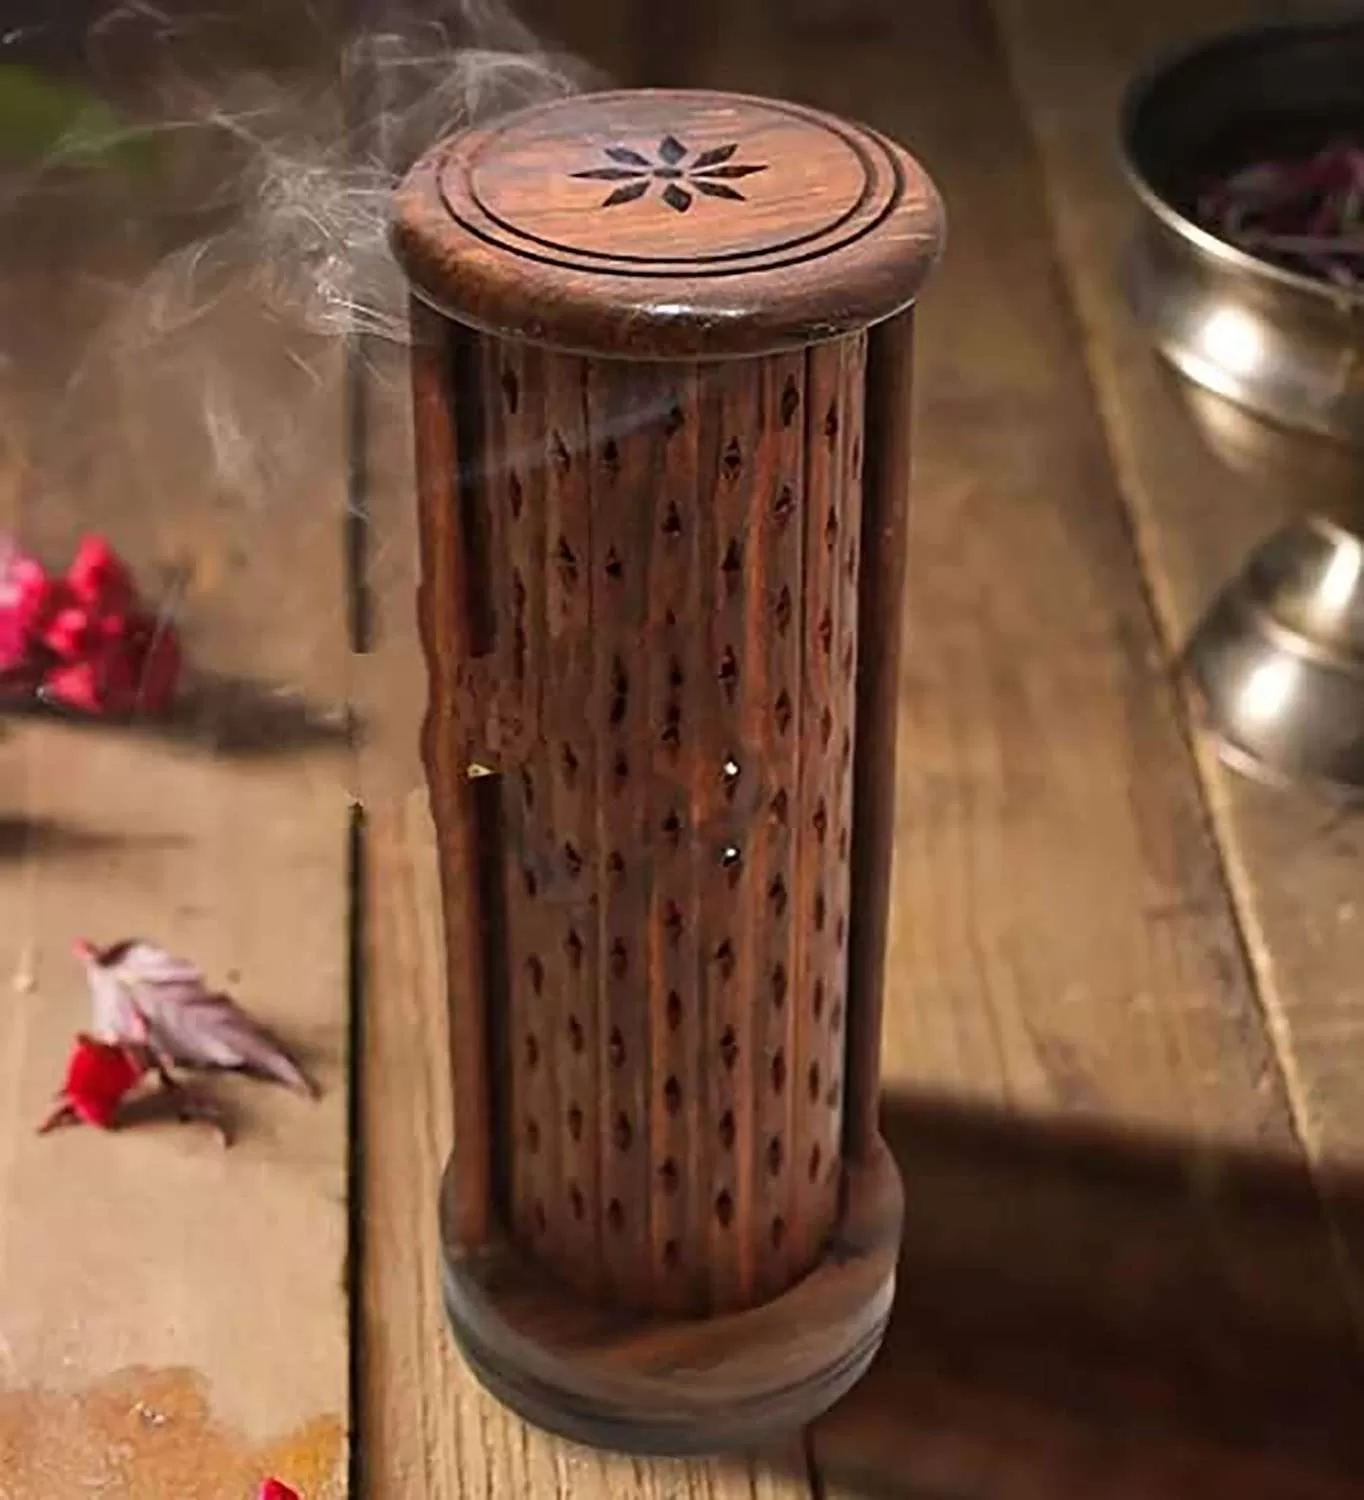 Wooden incense burner